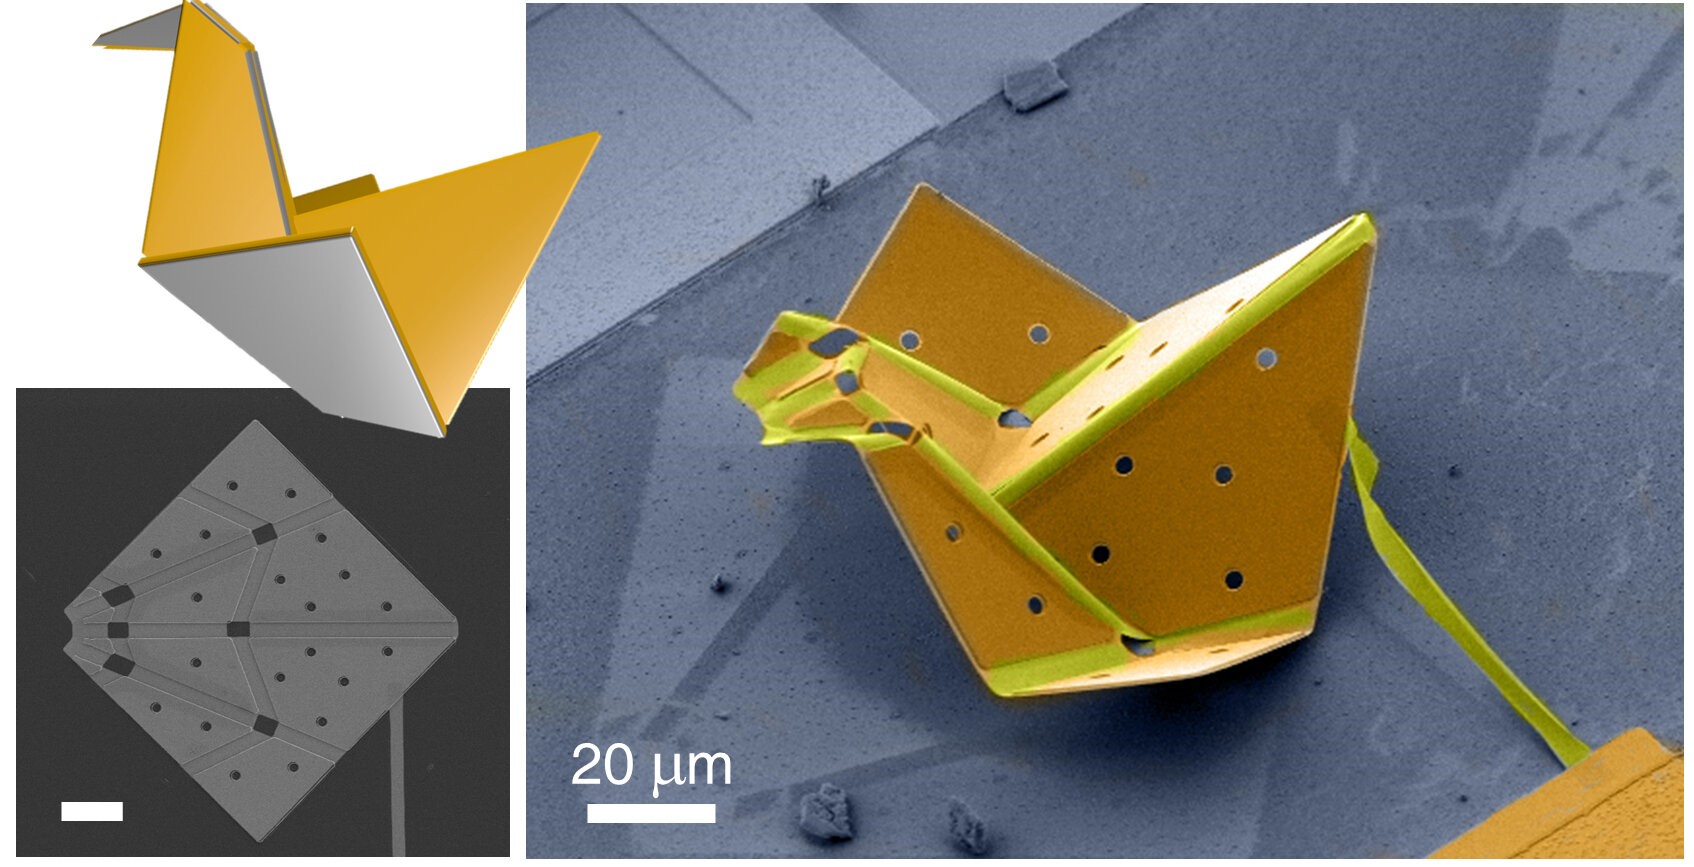 Graças à nanotecnologia, cientistas construíram o que pode ser o menor pássaro de origami do mundo (Foto: Liu et al., Sci. Robot. 6, eabe6663 (2021))